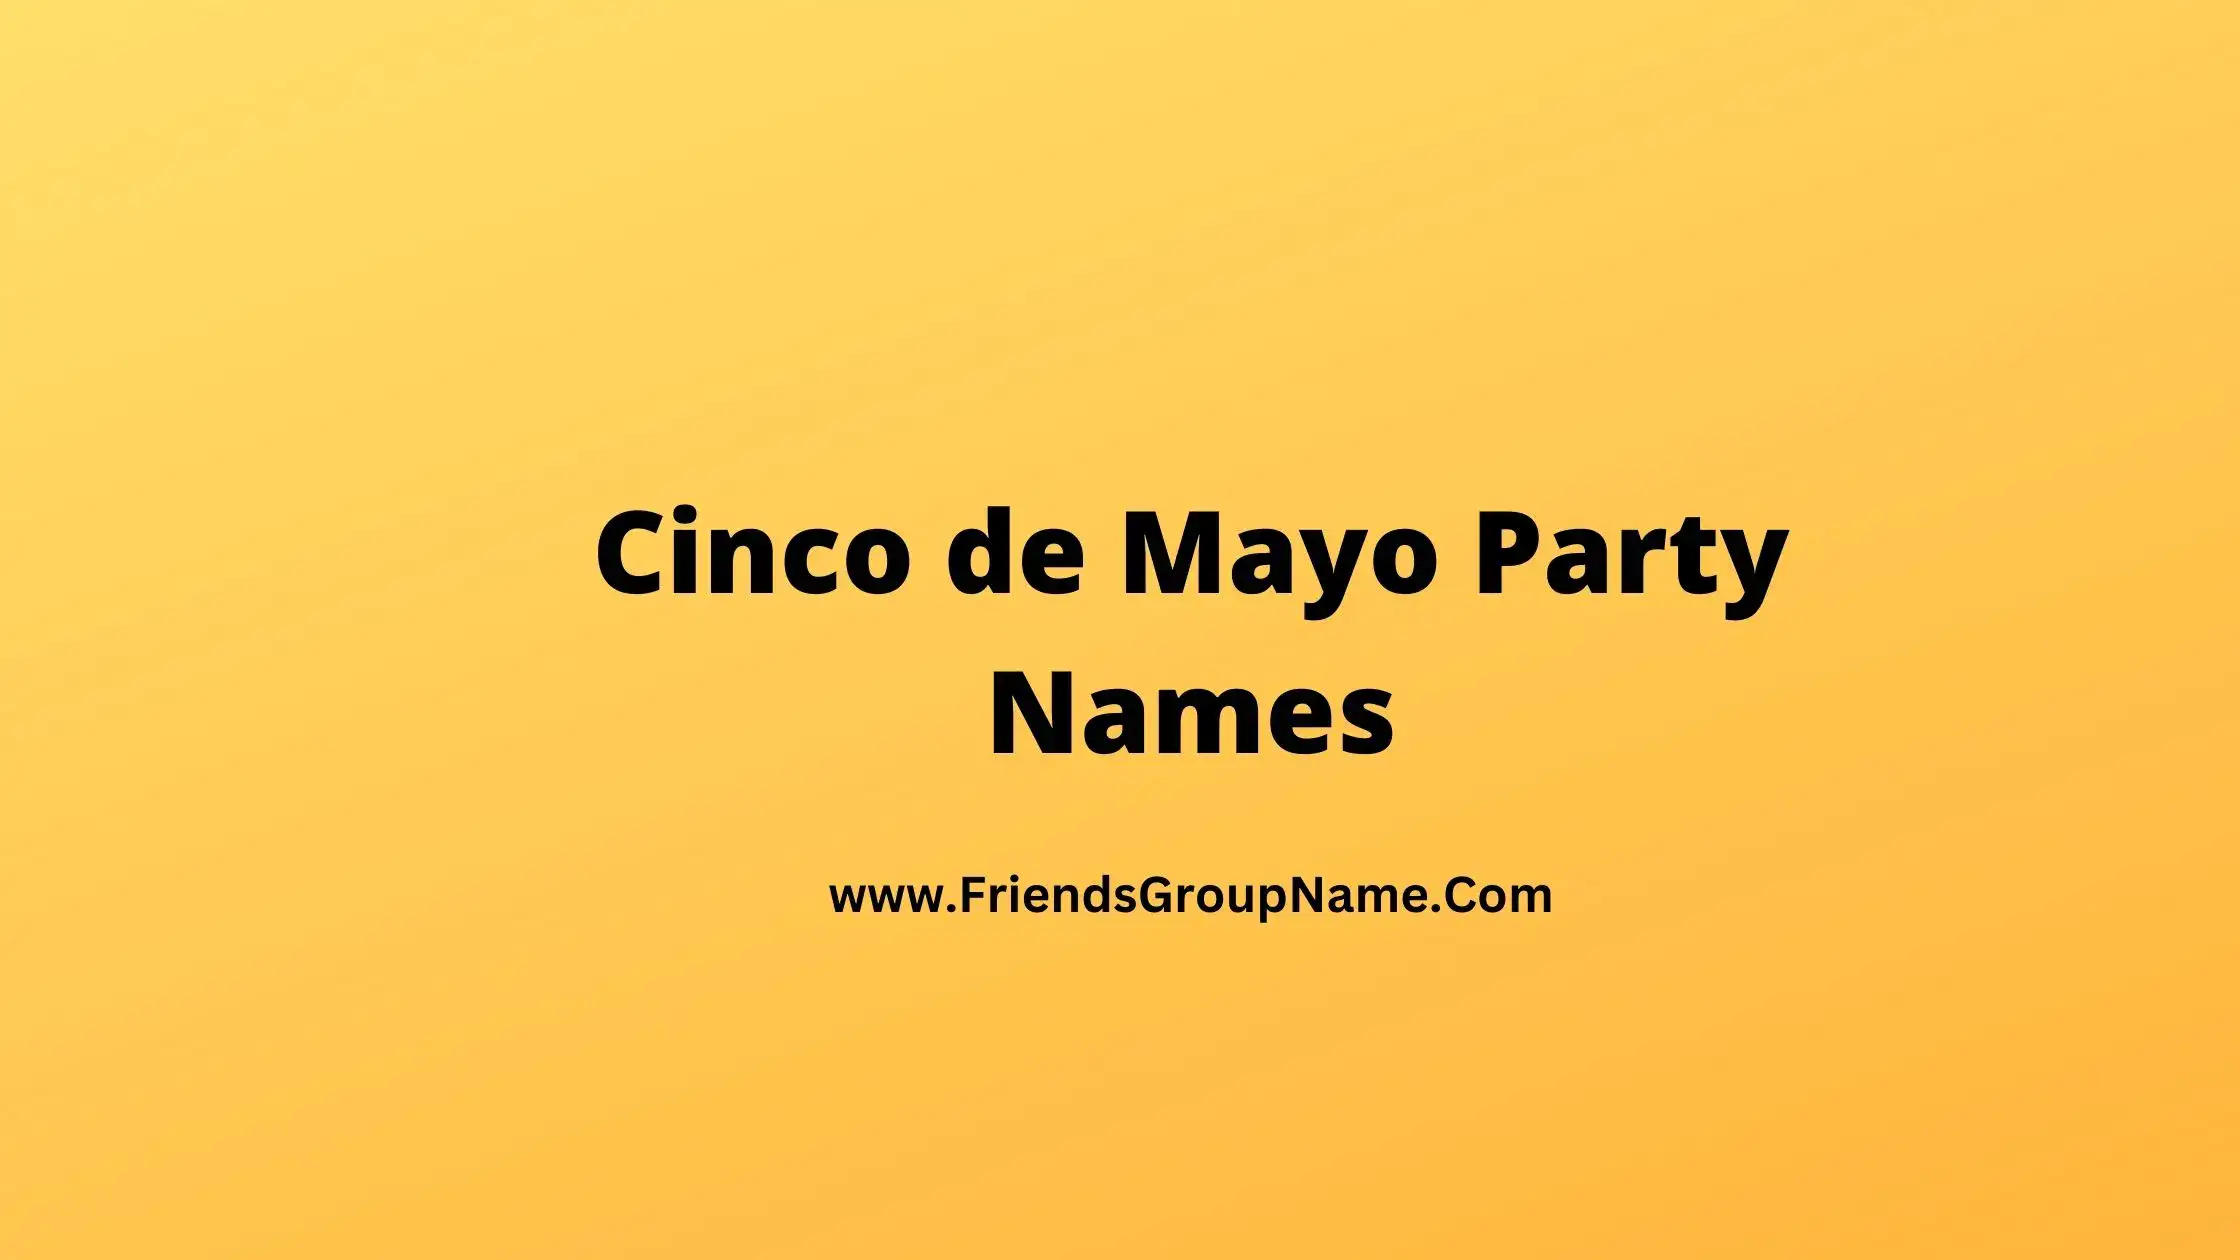 Cinco de Mayo Party Names